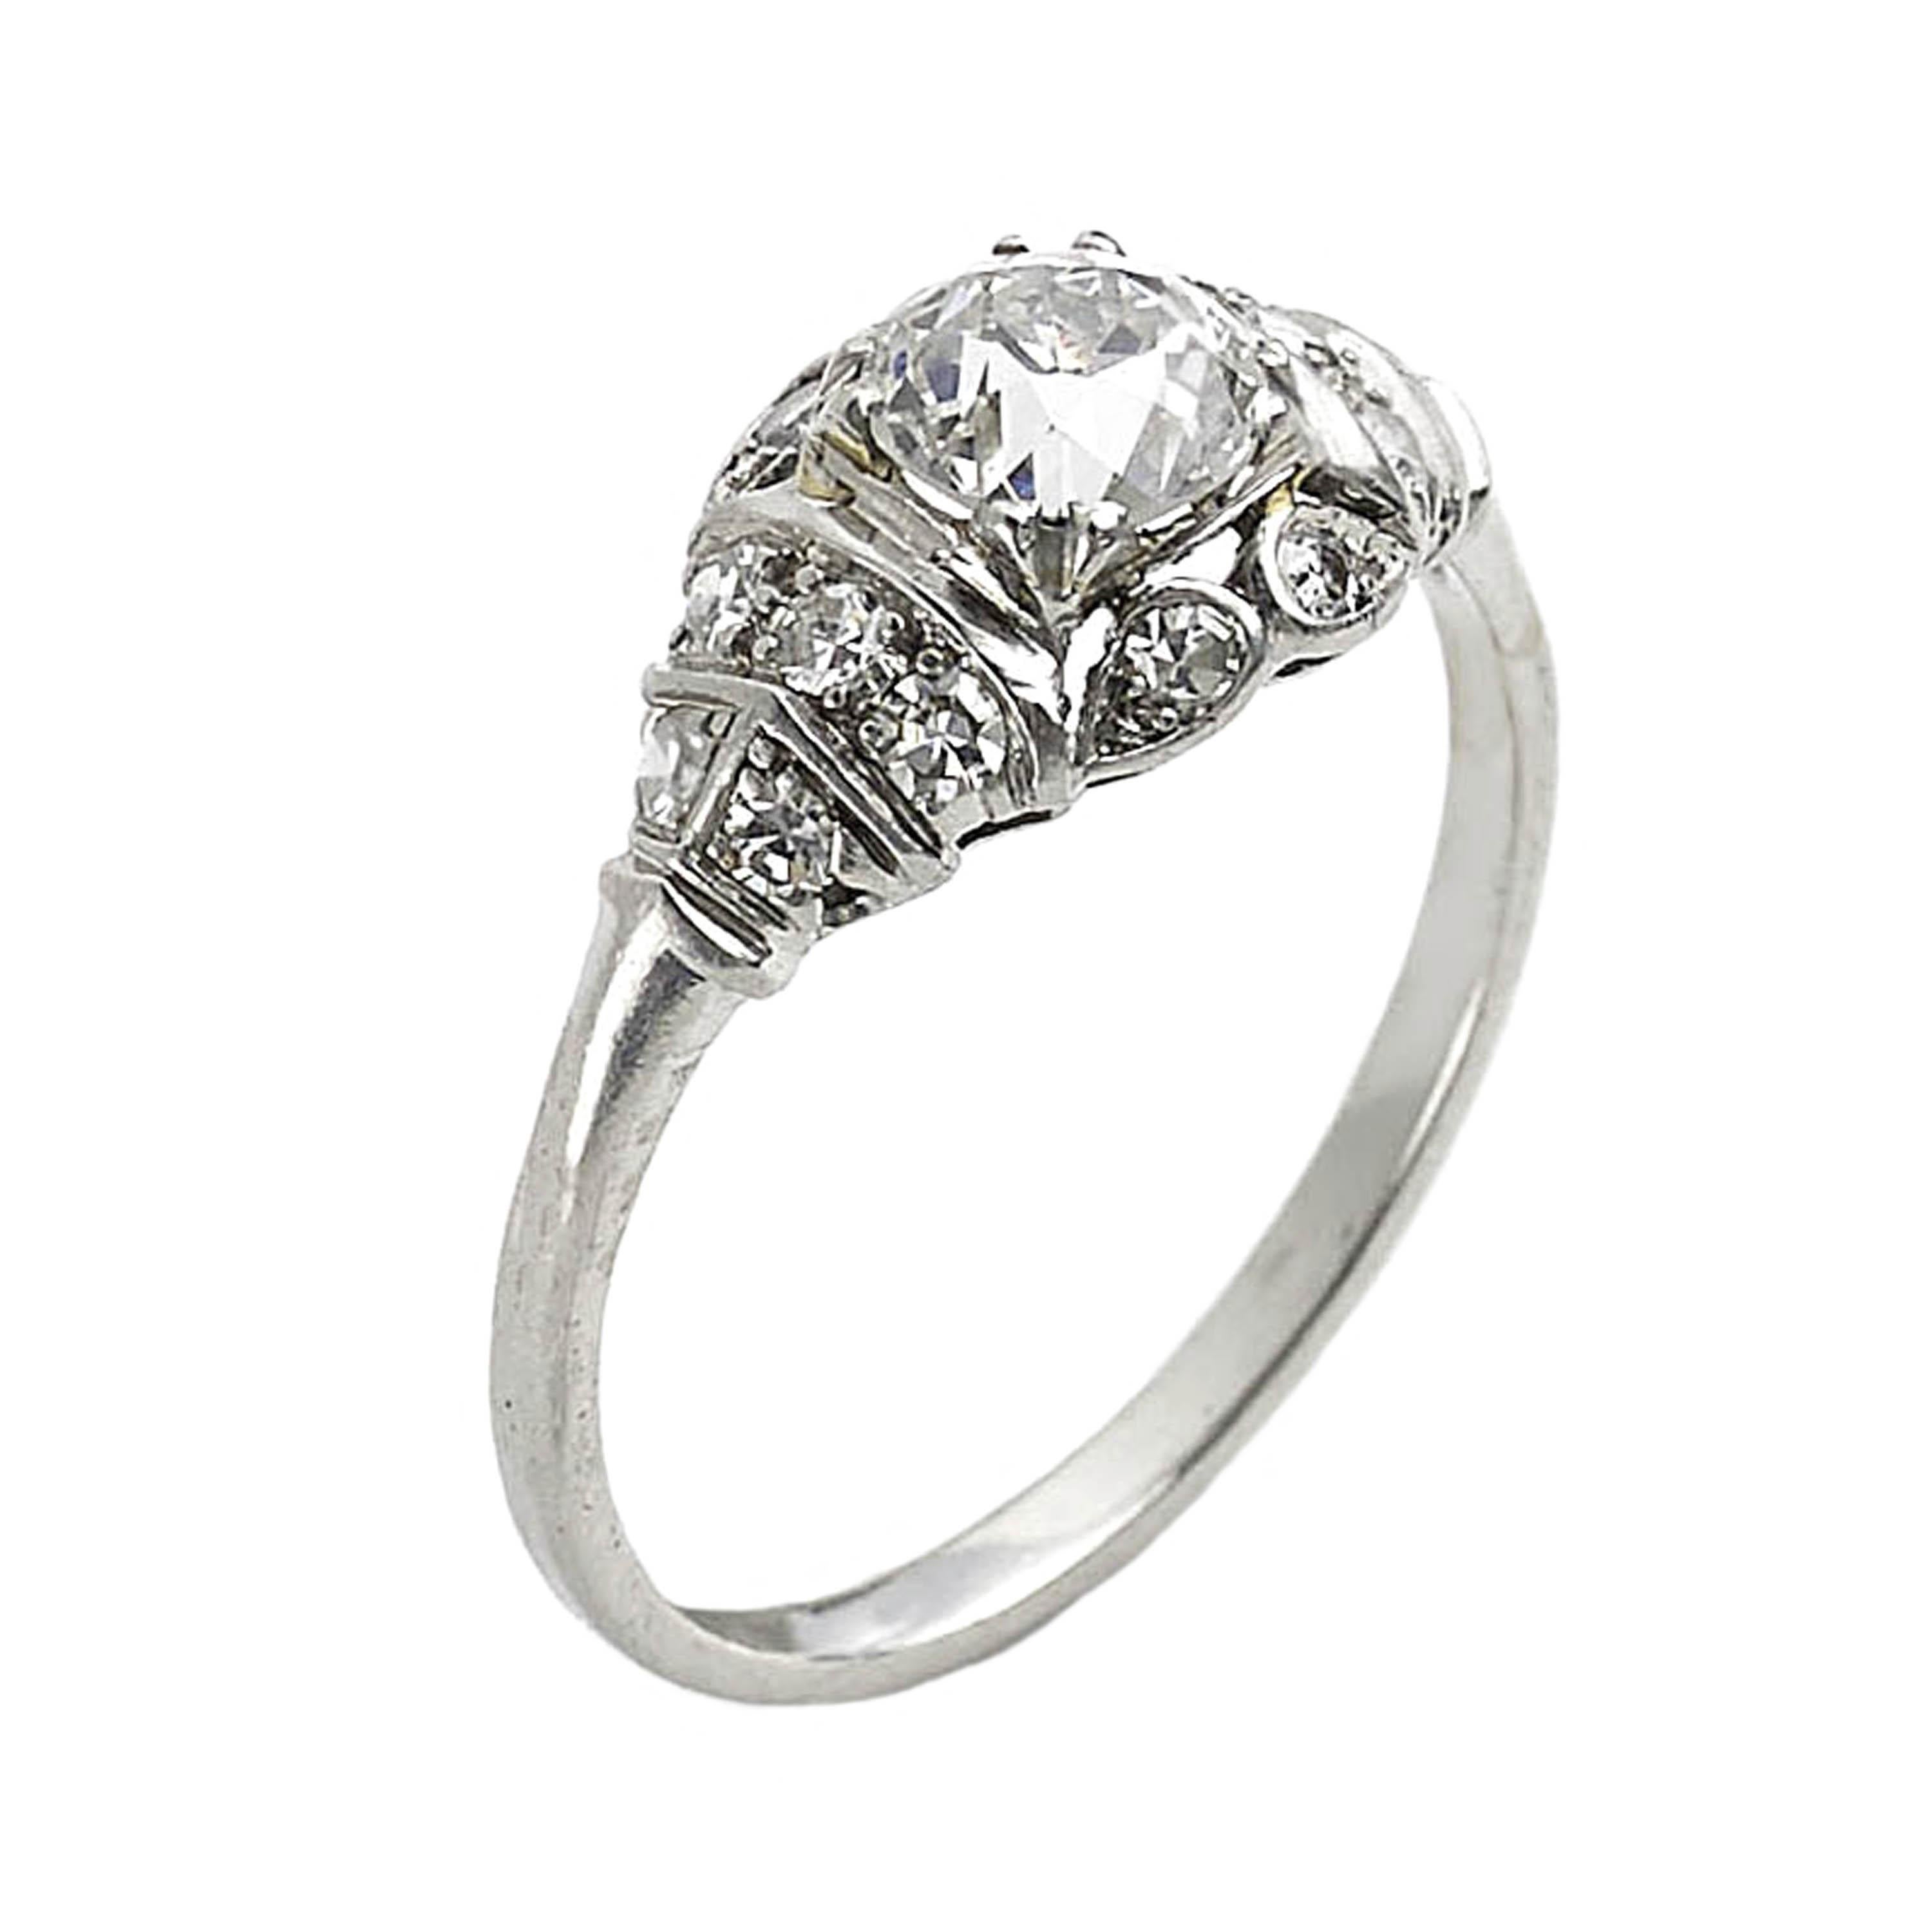 Ein später Art Deco Diamantring, besetzt mit einem 0,85ct, H Farbe, SI1 Klarheit, Edwardian-Schliff Diamant, in einer vier Doppel-Krallen-Fassung, mit einem Acht-Schliff Diamant Korn gesetzt, dekorative Surround und Schultern, in Platin montiert, 